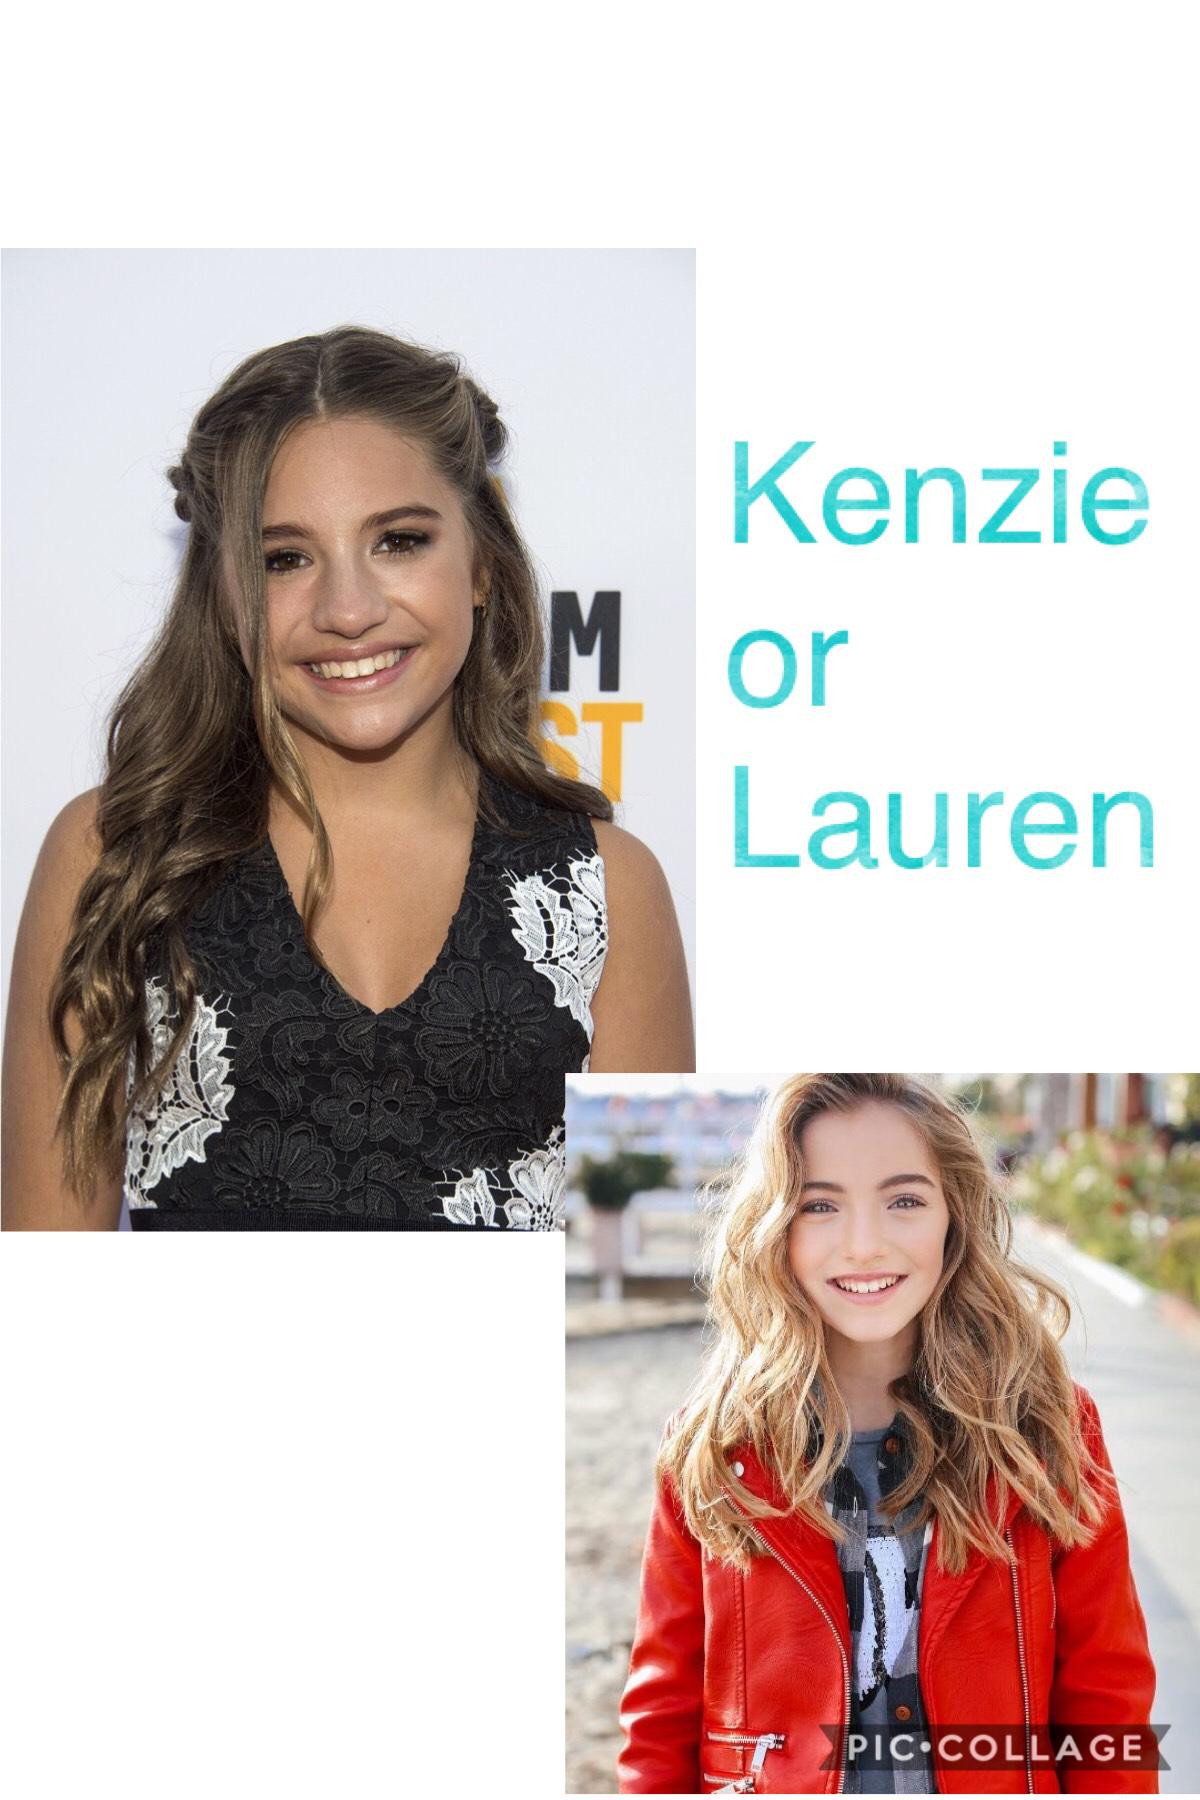 Kenzie or Lauren?